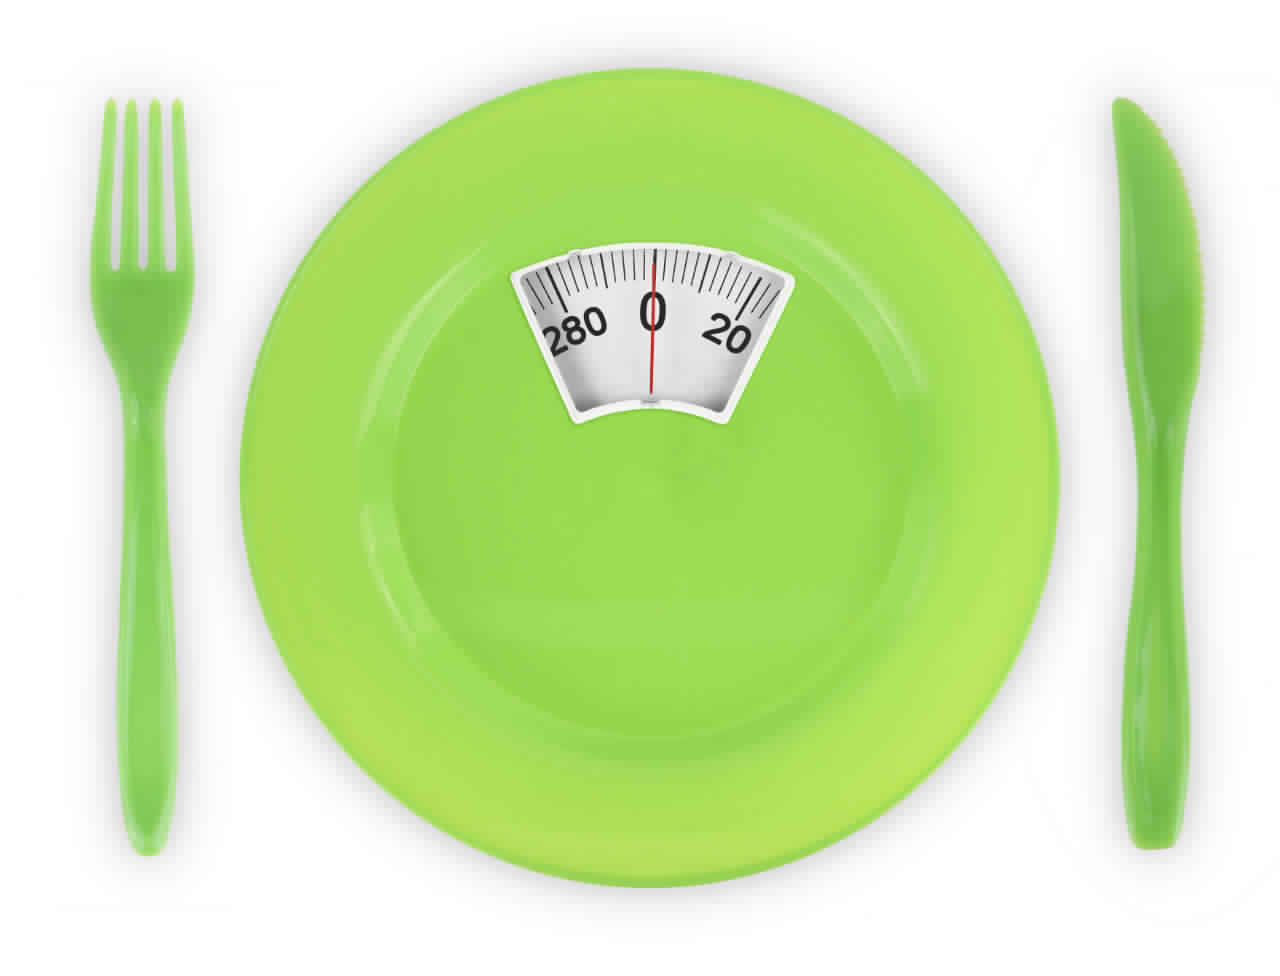 برنامج غذائي صحي لتخفيف الوزن بدون ريجيم أو حرمان